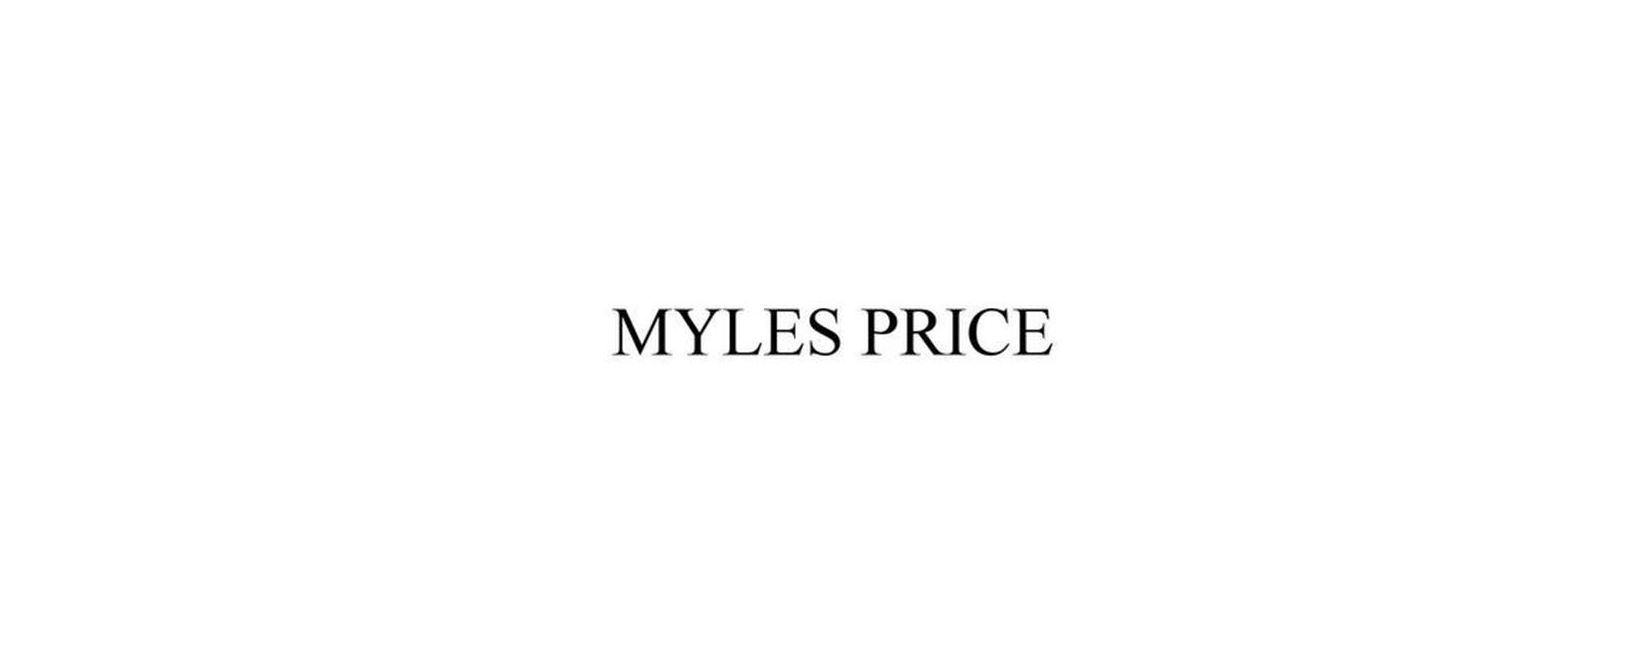 Myles Price Discount Code 2022